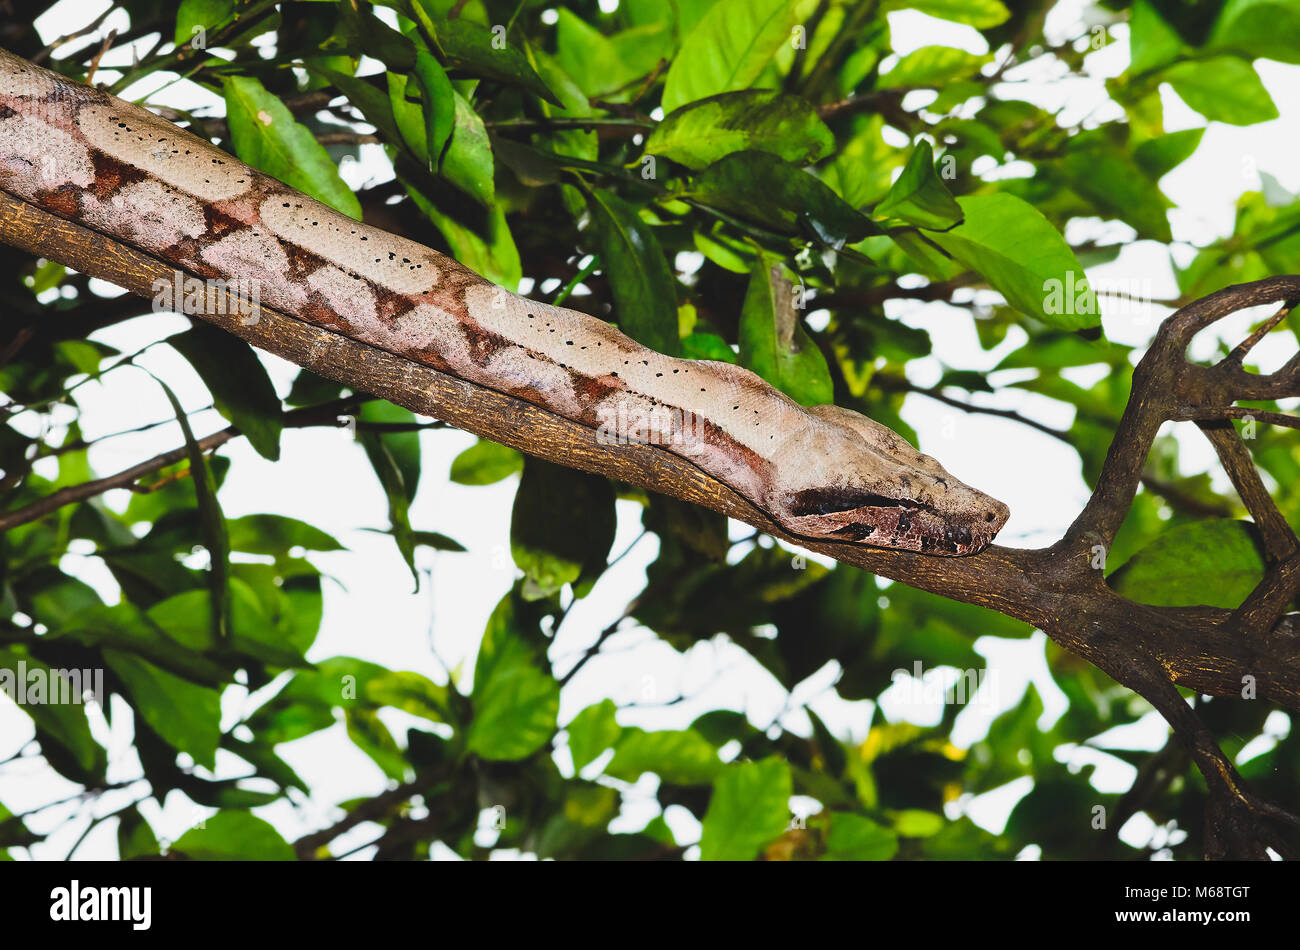 La serpiente Jararaca salvajes en la rama de un árbol. Foto de stock